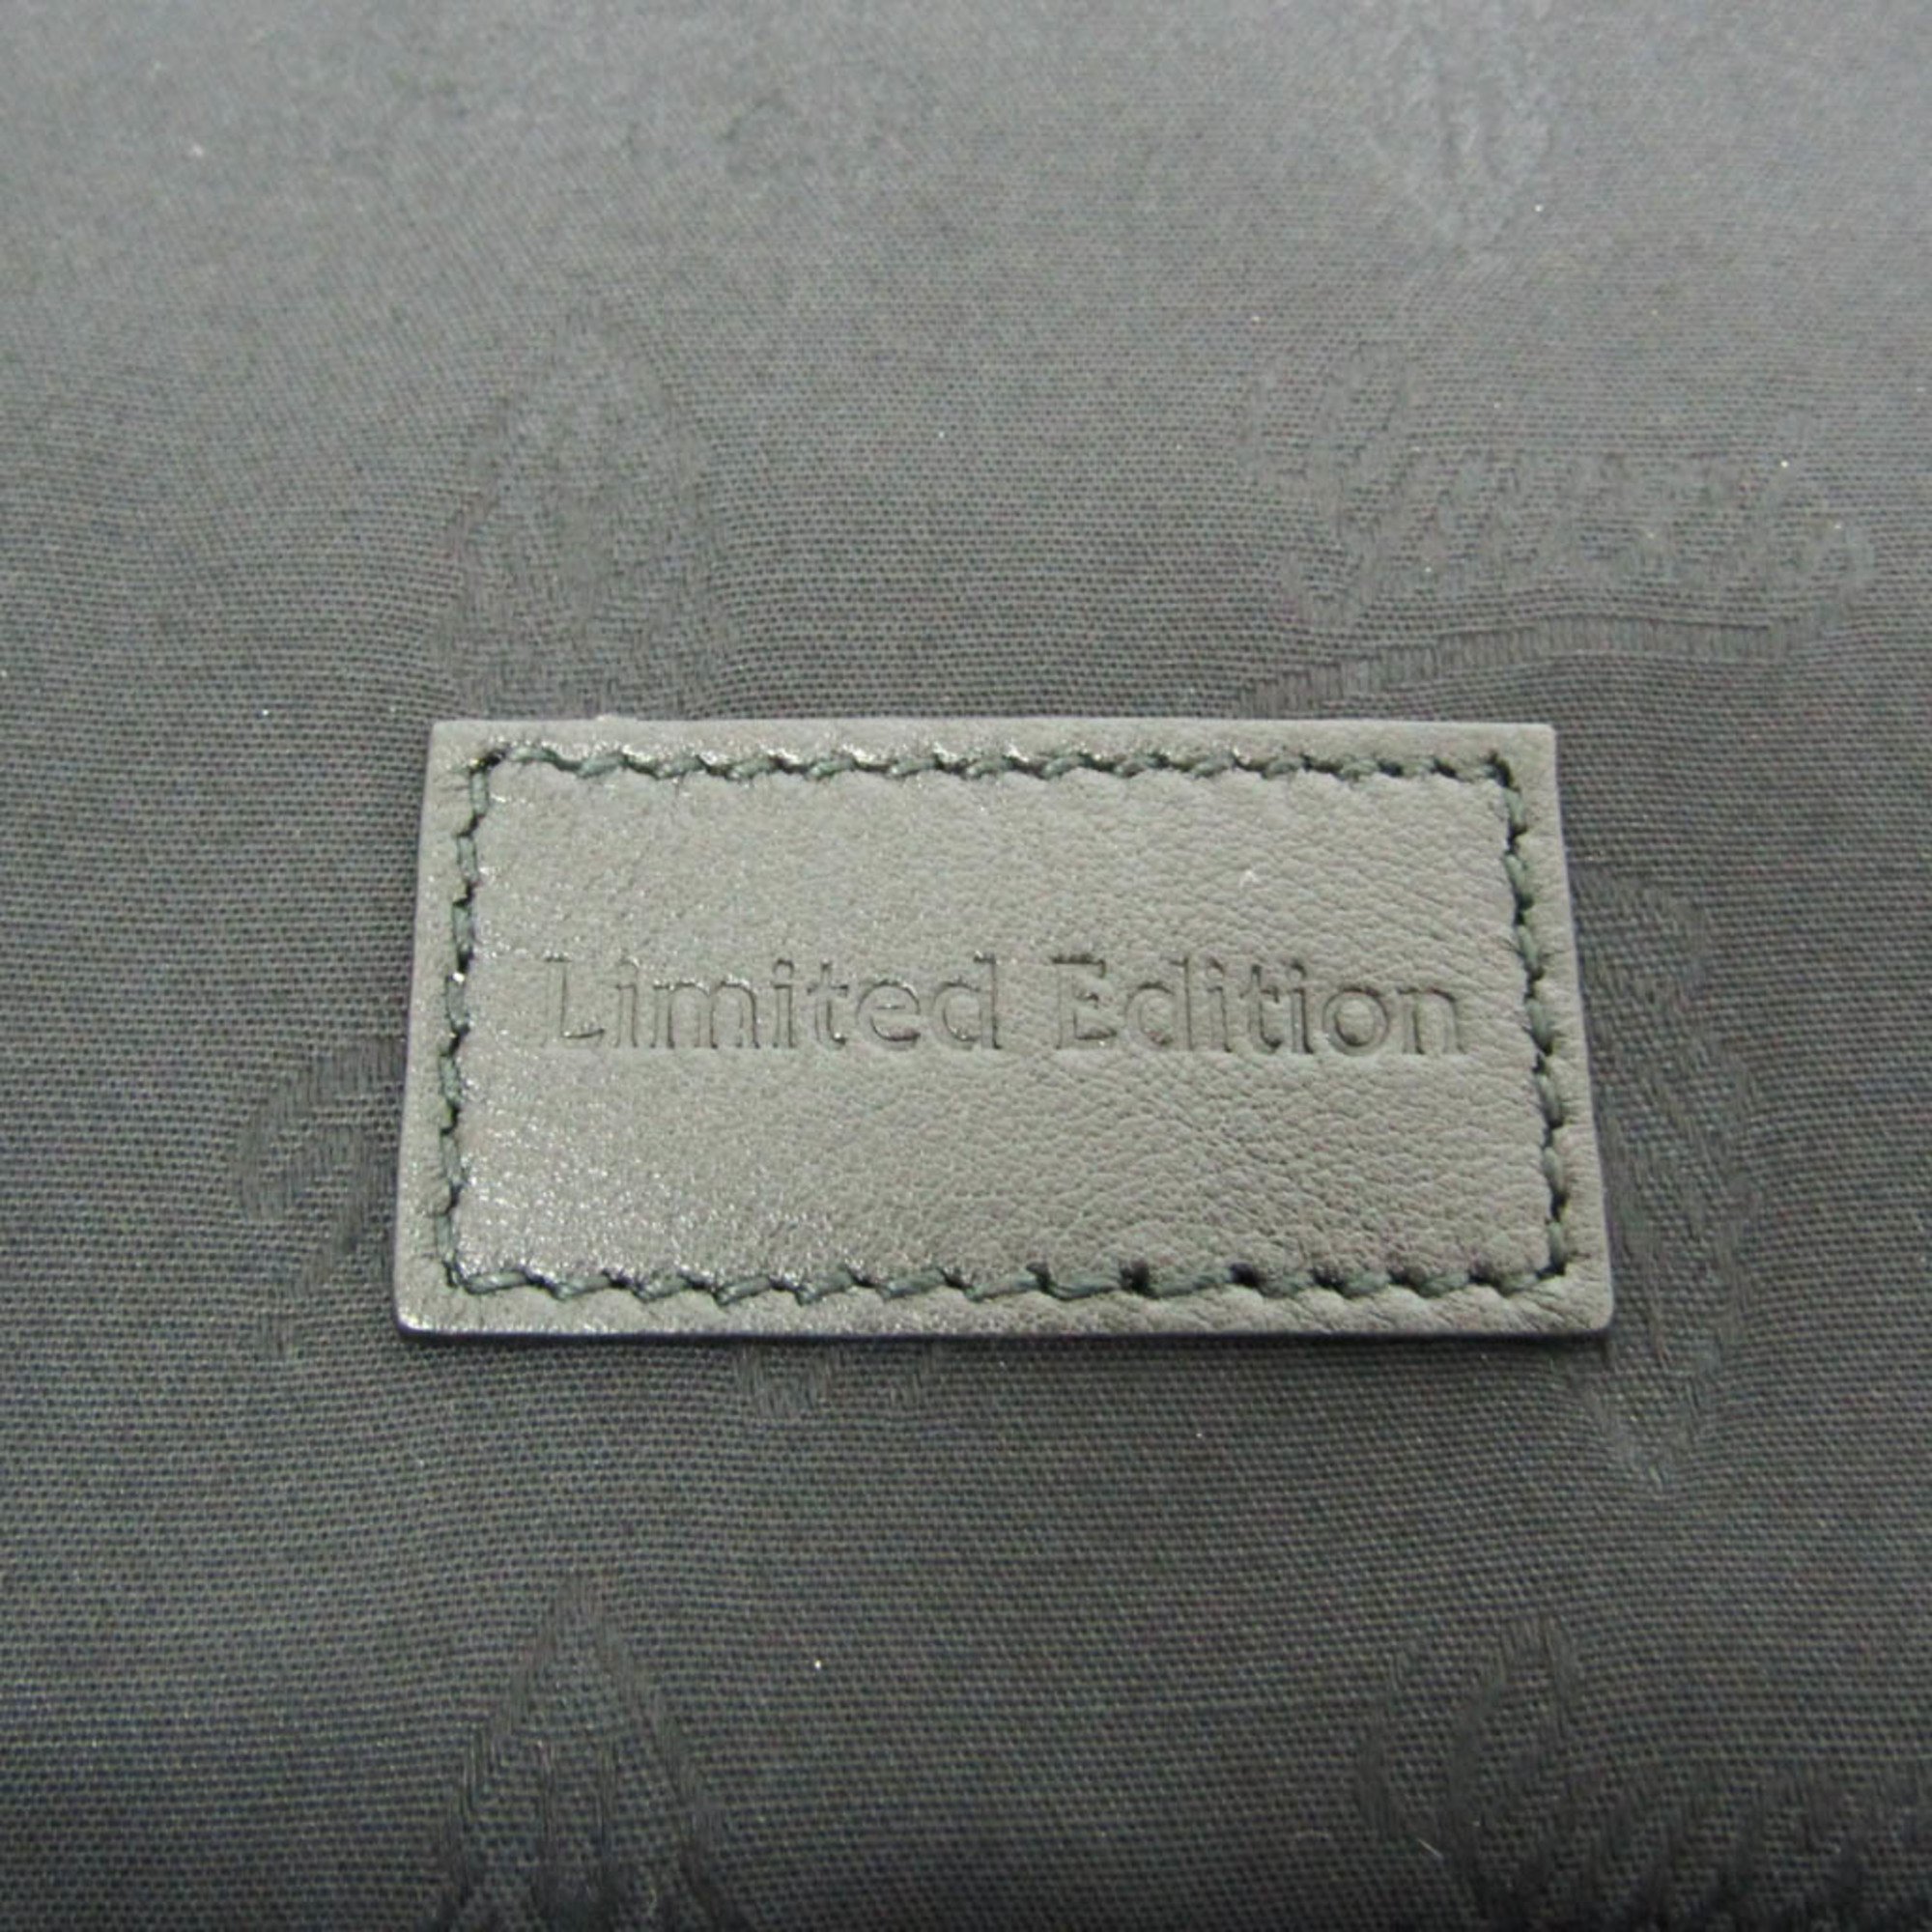 グッチ(Gucci) Limited Edition ネクタイケース 268114 メンズ ネクタイ レザー グレー